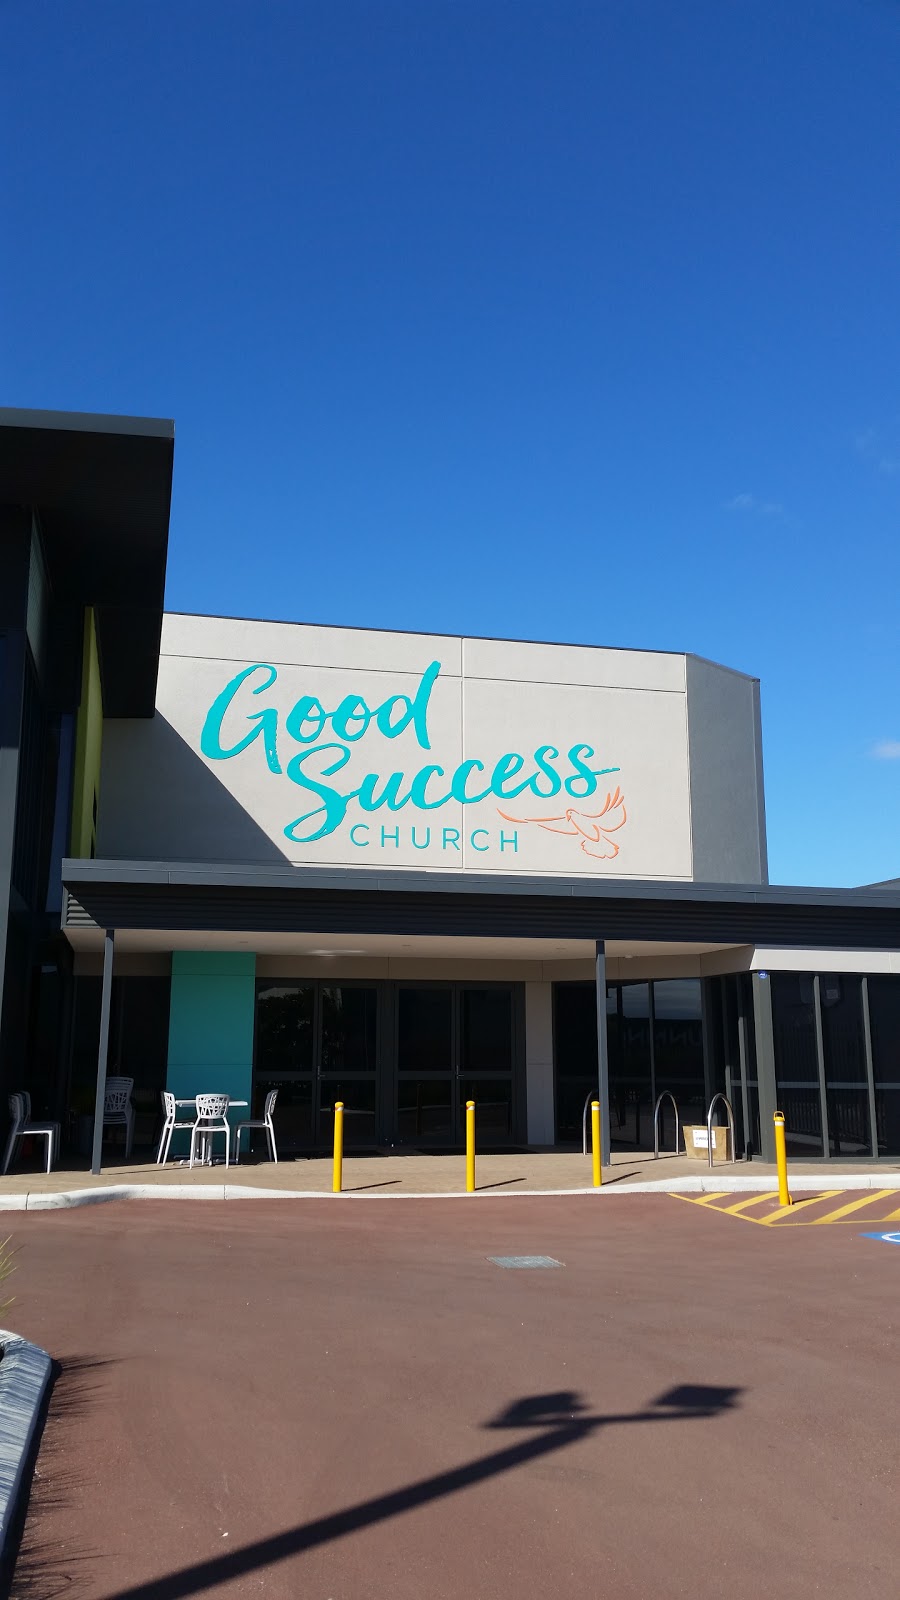 Good Success Church | 6 Avior Ave, Jandakot WA 6164, Australia | Phone: (08) 9457 6611